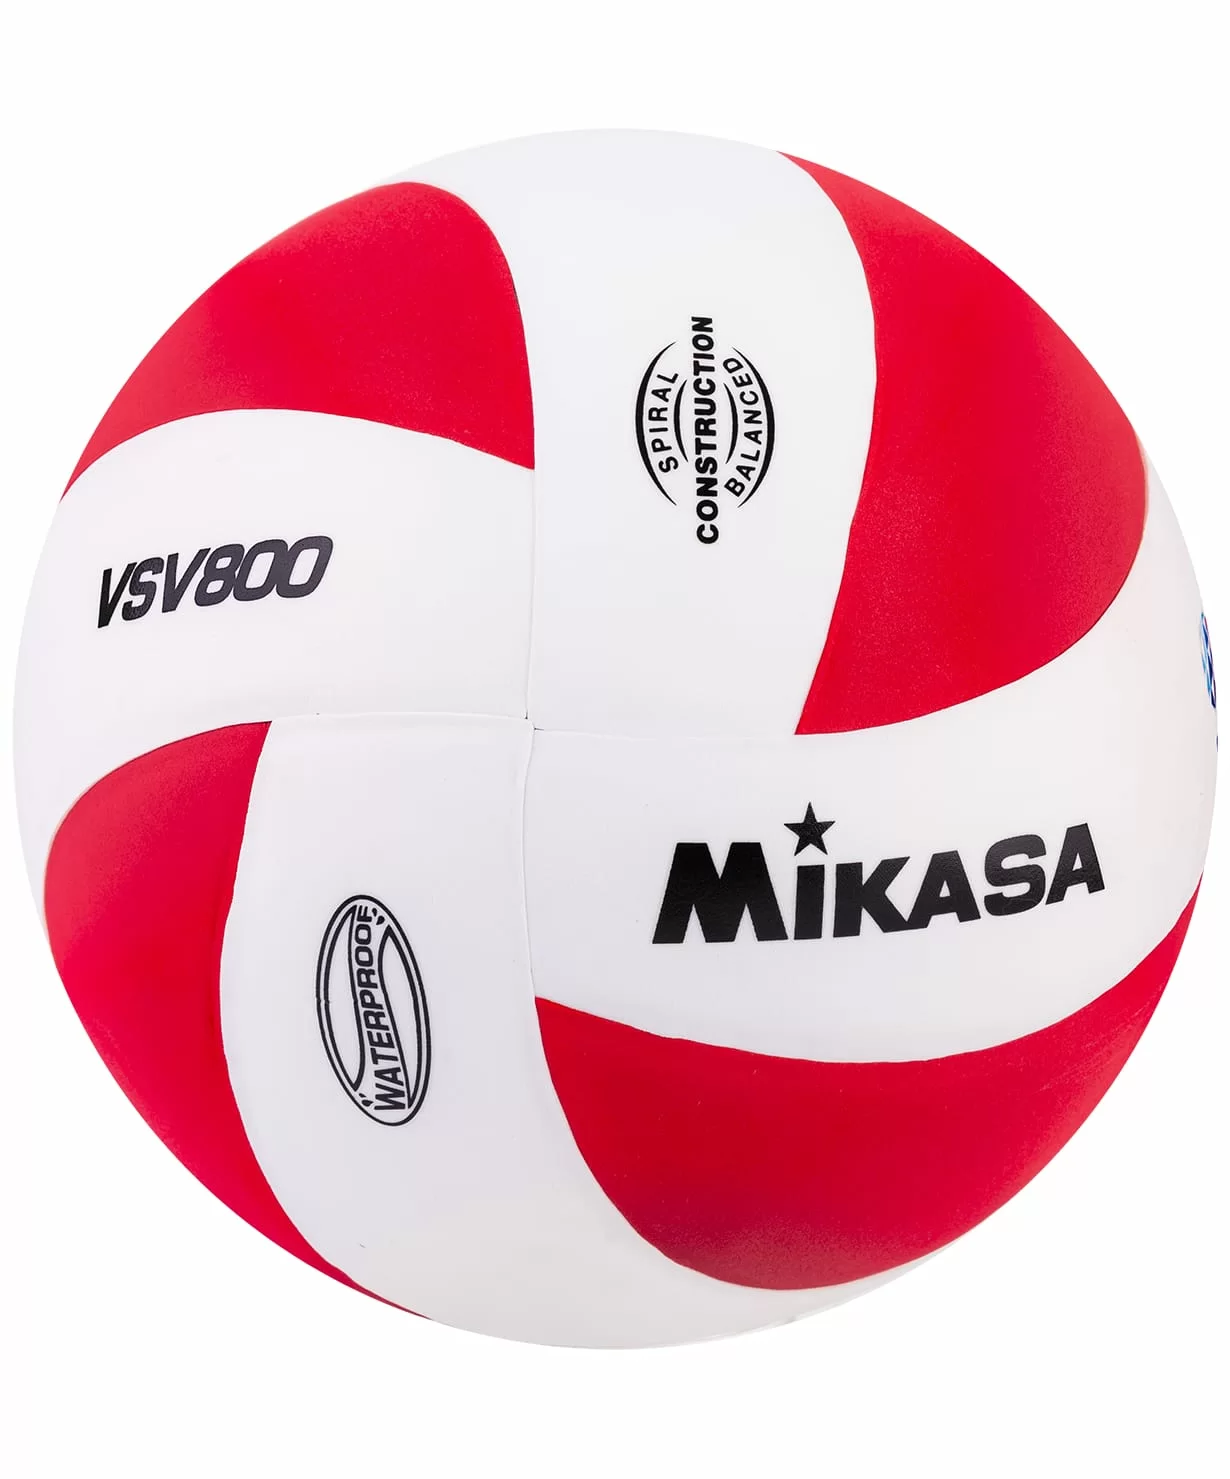 Реальное фото Мяч волейбольный Mikasa VSV 800 WR от магазина СпортСЕ